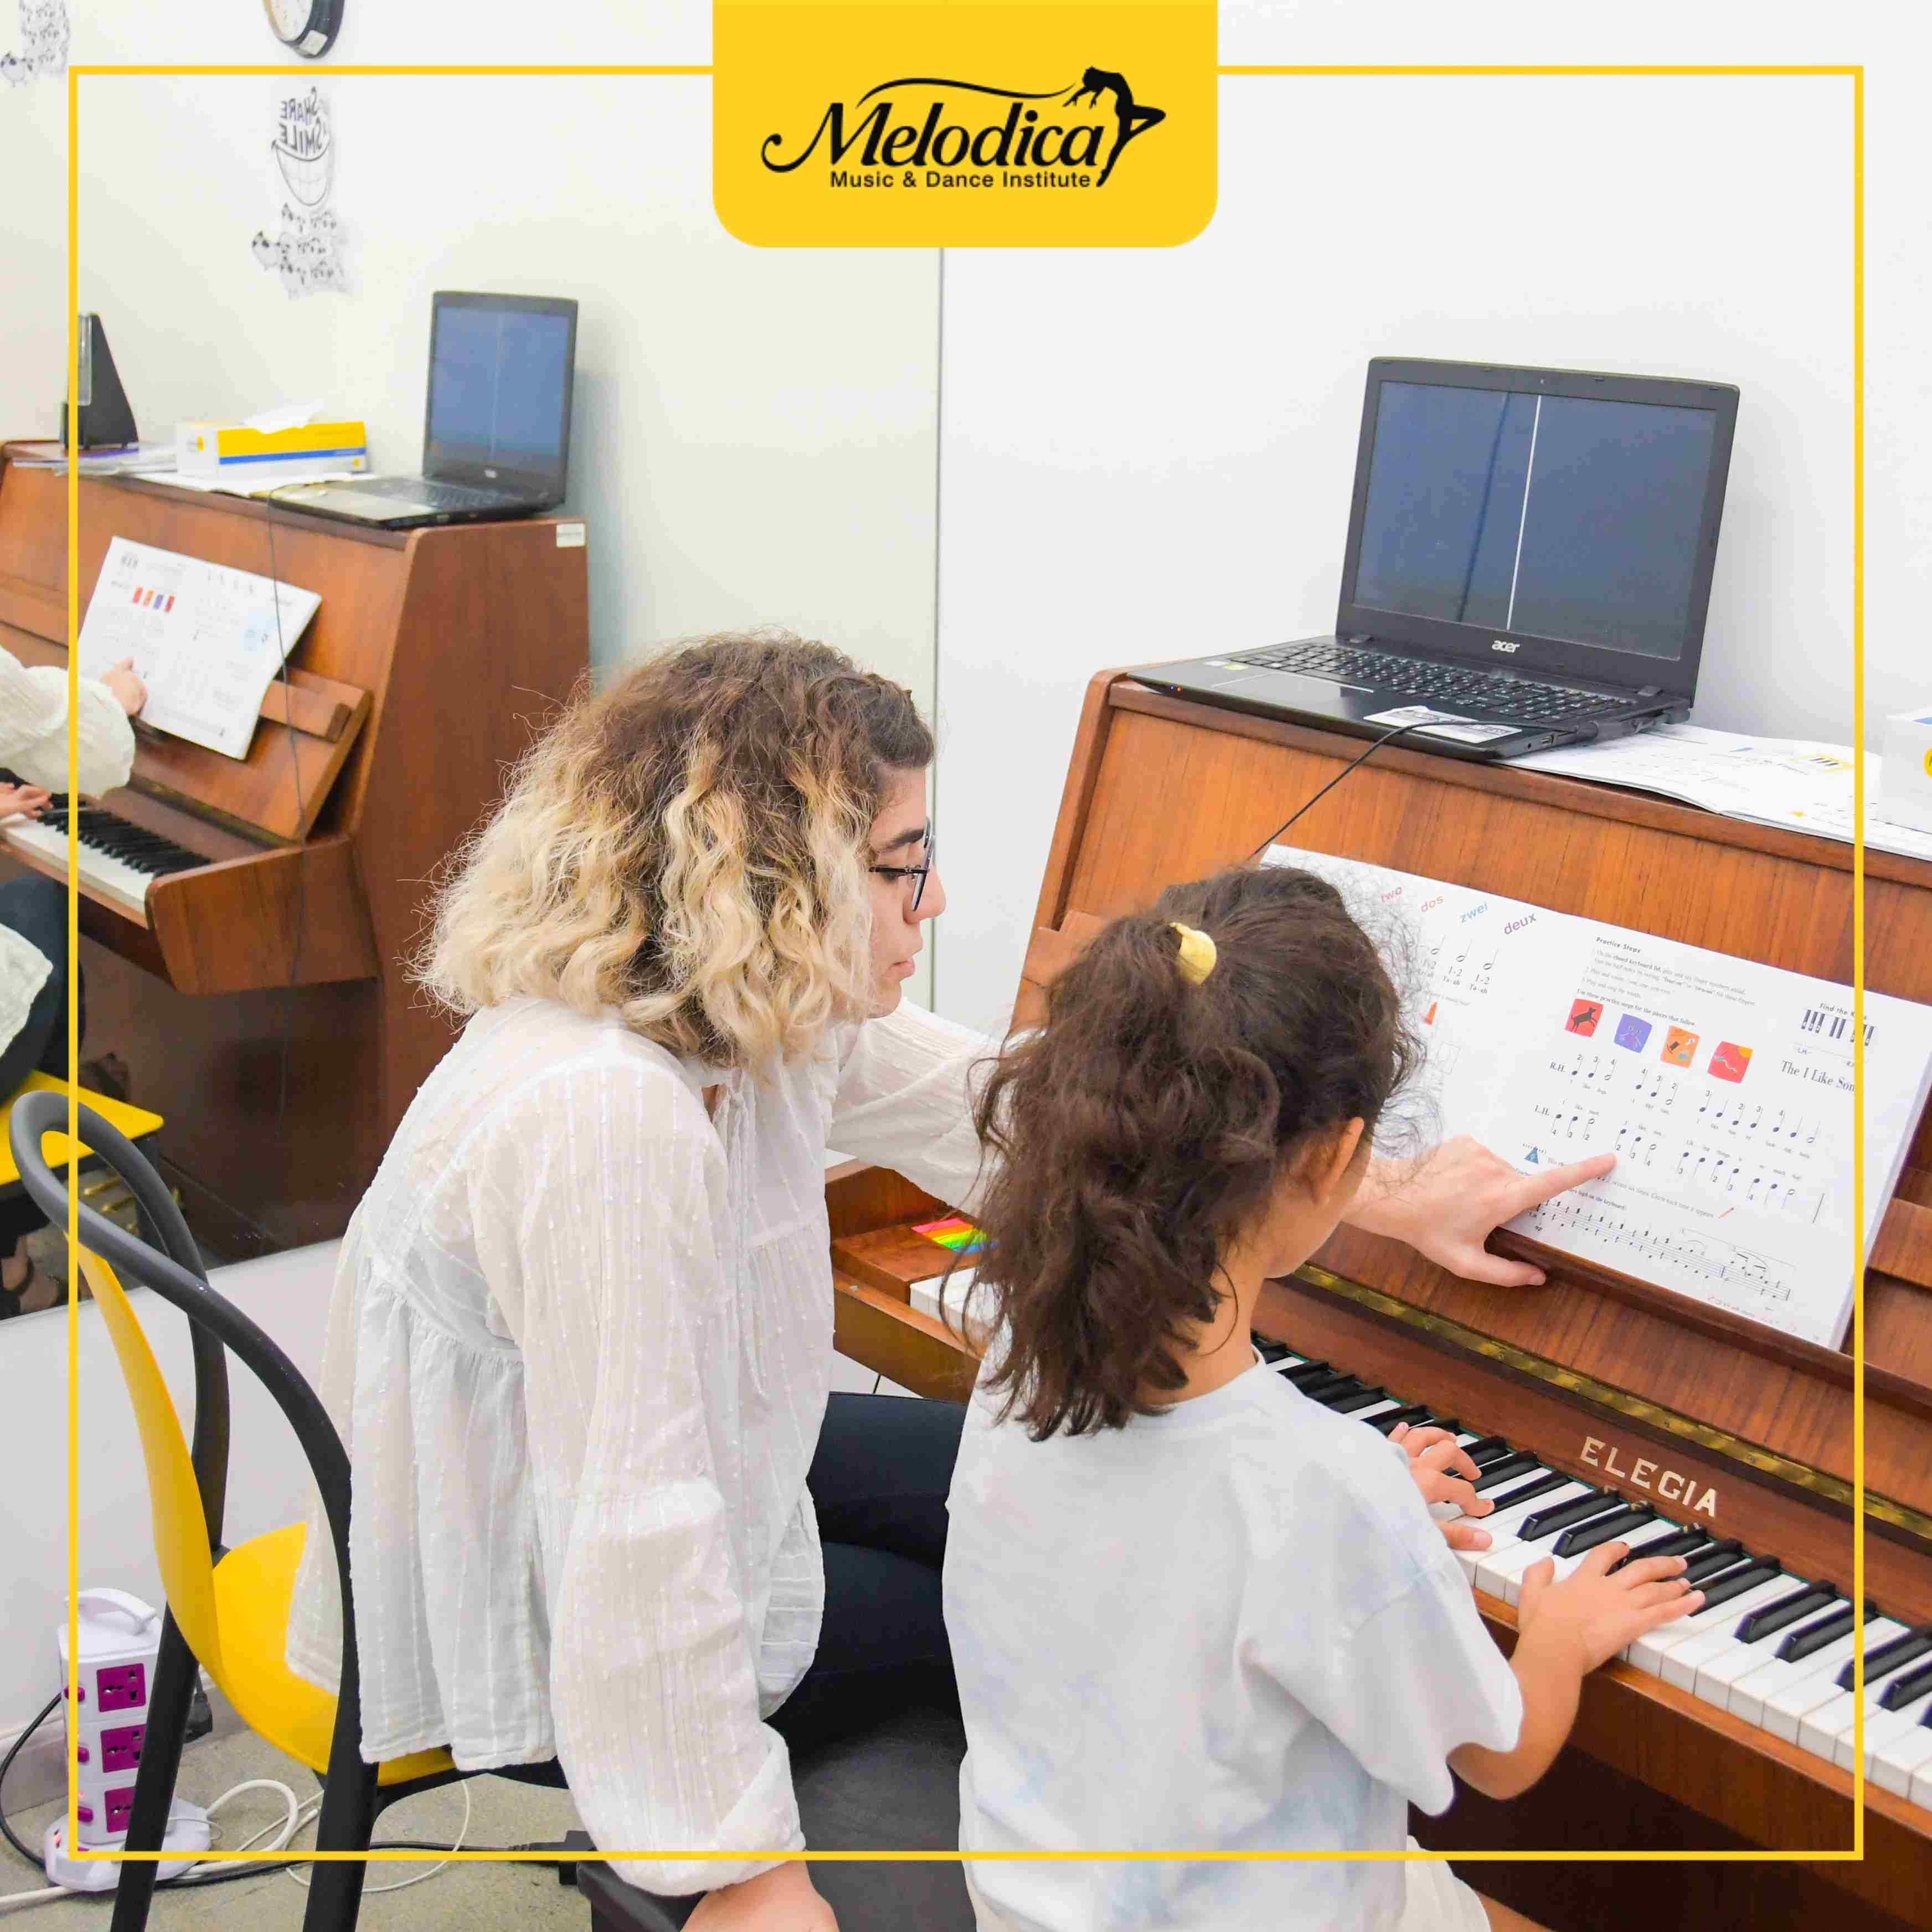 Piano classes6 11 11zon - Melodica Music Center